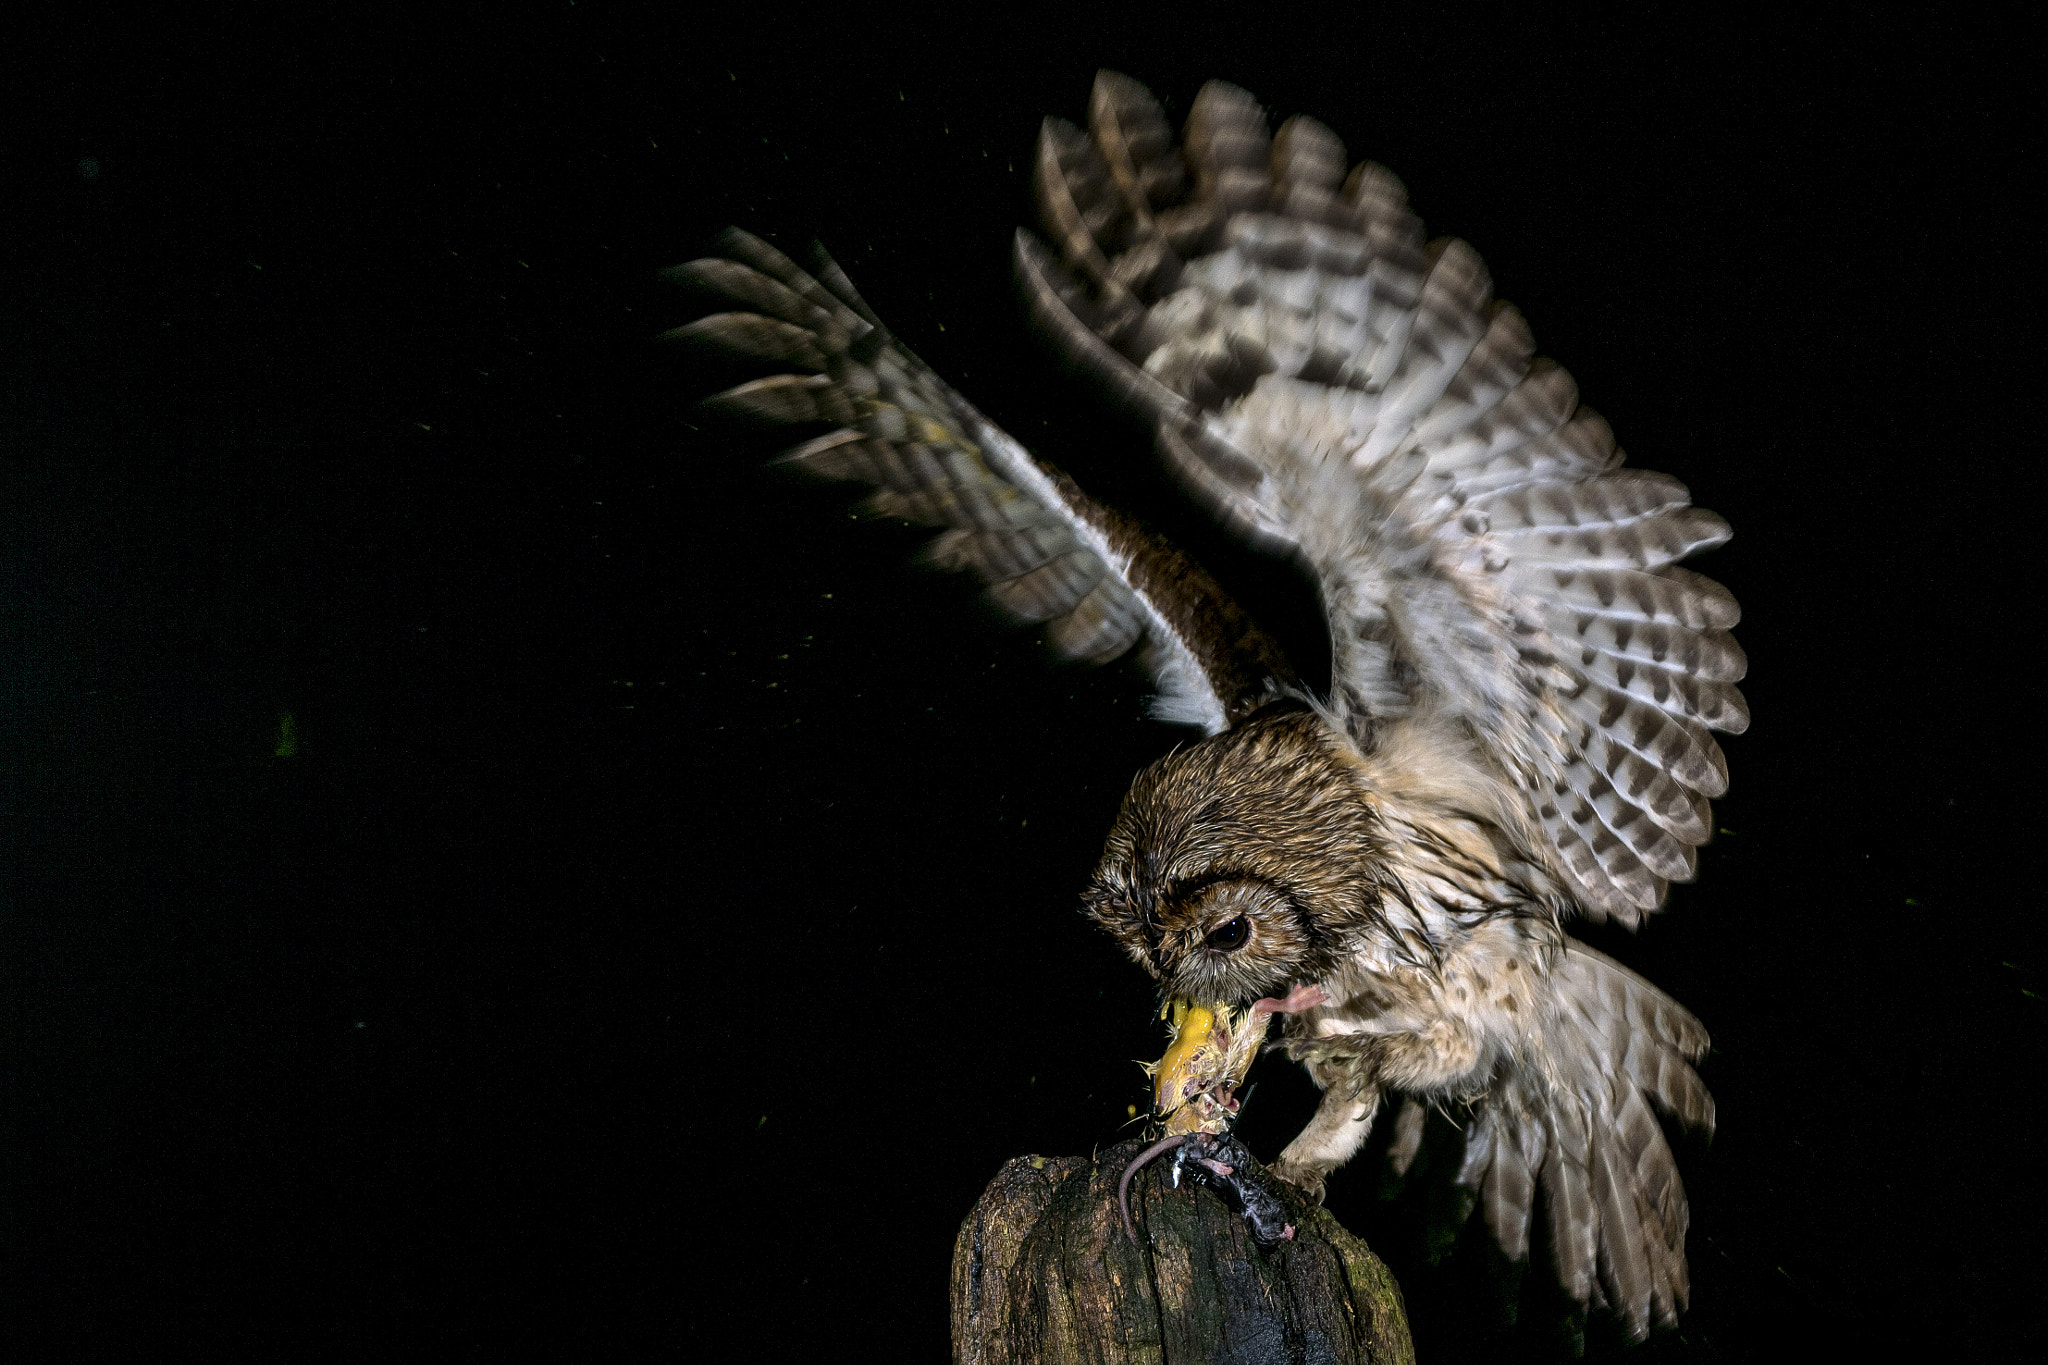 Sony ILCA-77M2 sample photo. Tawny owl © bob riach photography